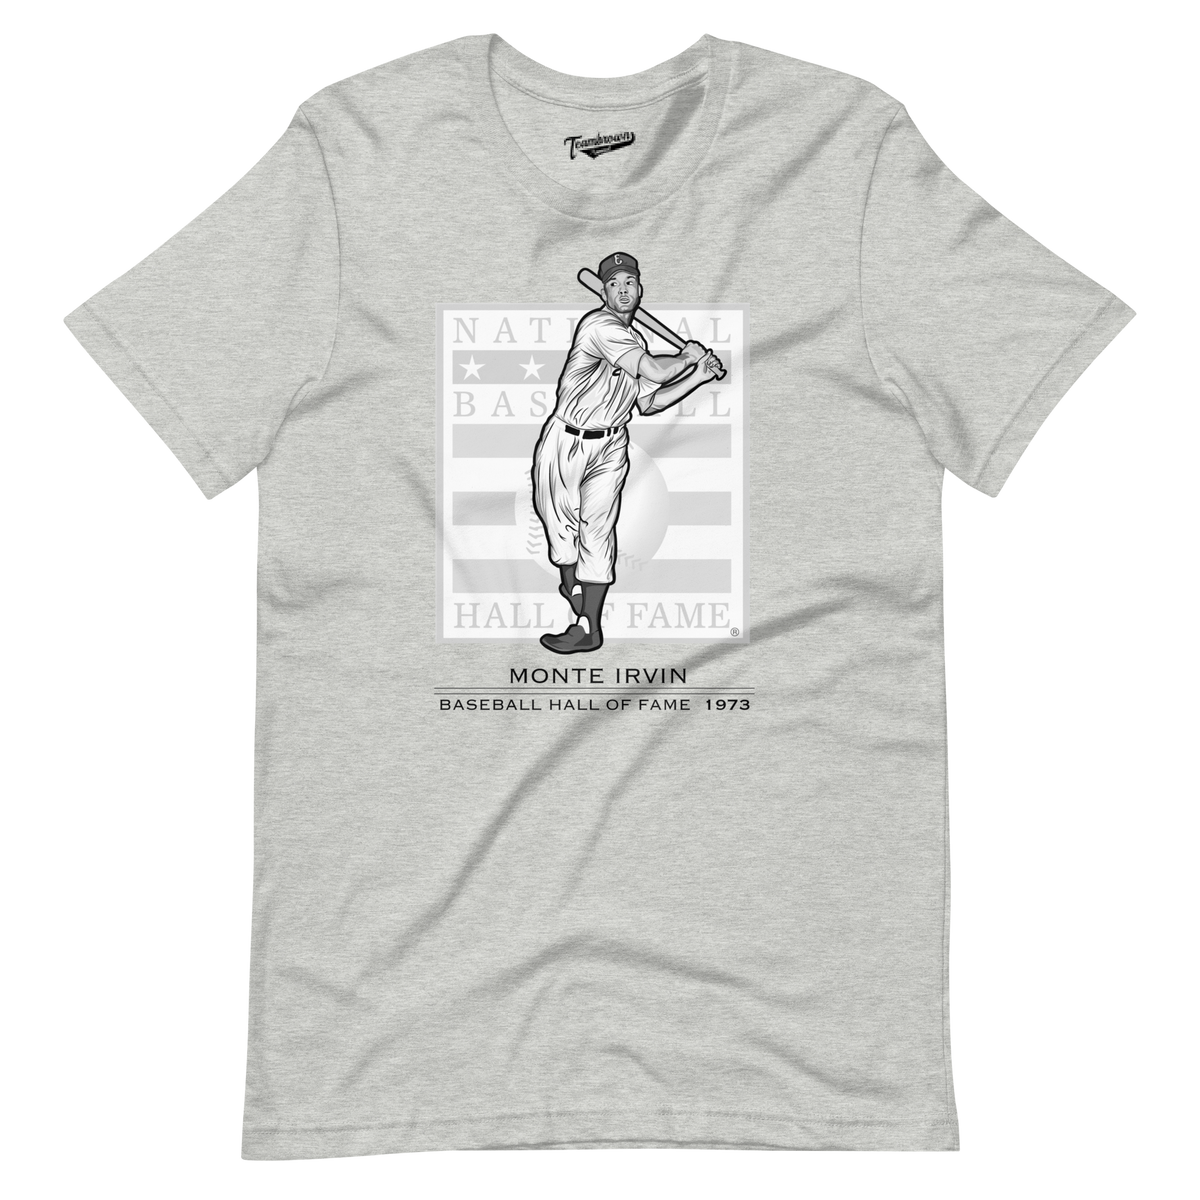 Women's Ozzie Smith RBI Slim Fit V-Neck T-Shirt - Navy - Tshirtsedge